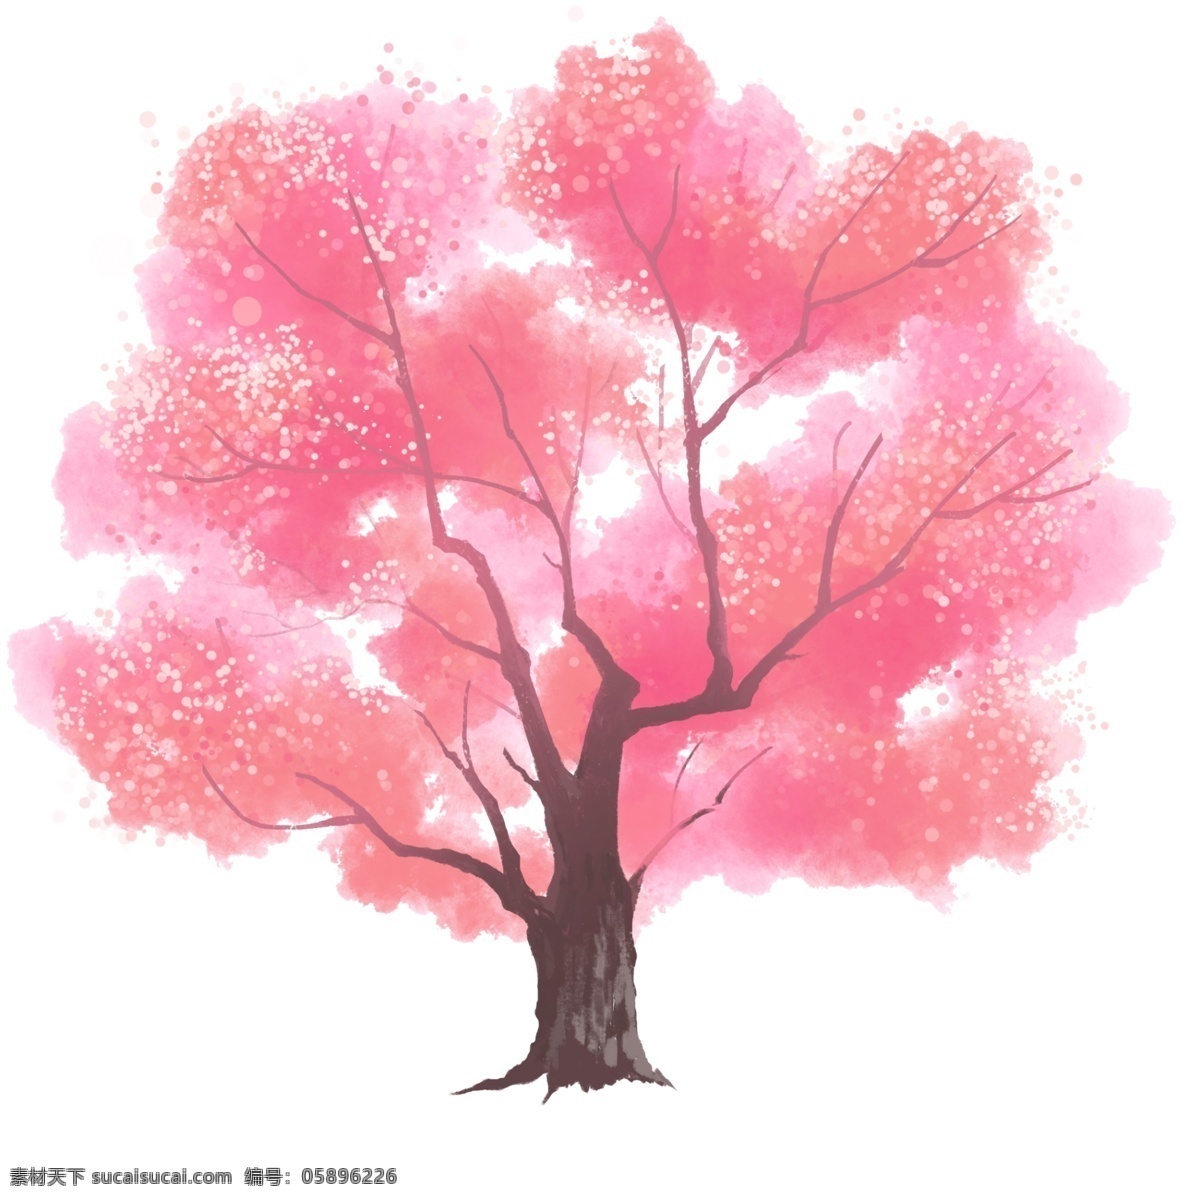 春季 观景 大树 插画 树木 粉色大树树叶 树 一棵粉色大树 树木插图 春天春季大树 观景大树